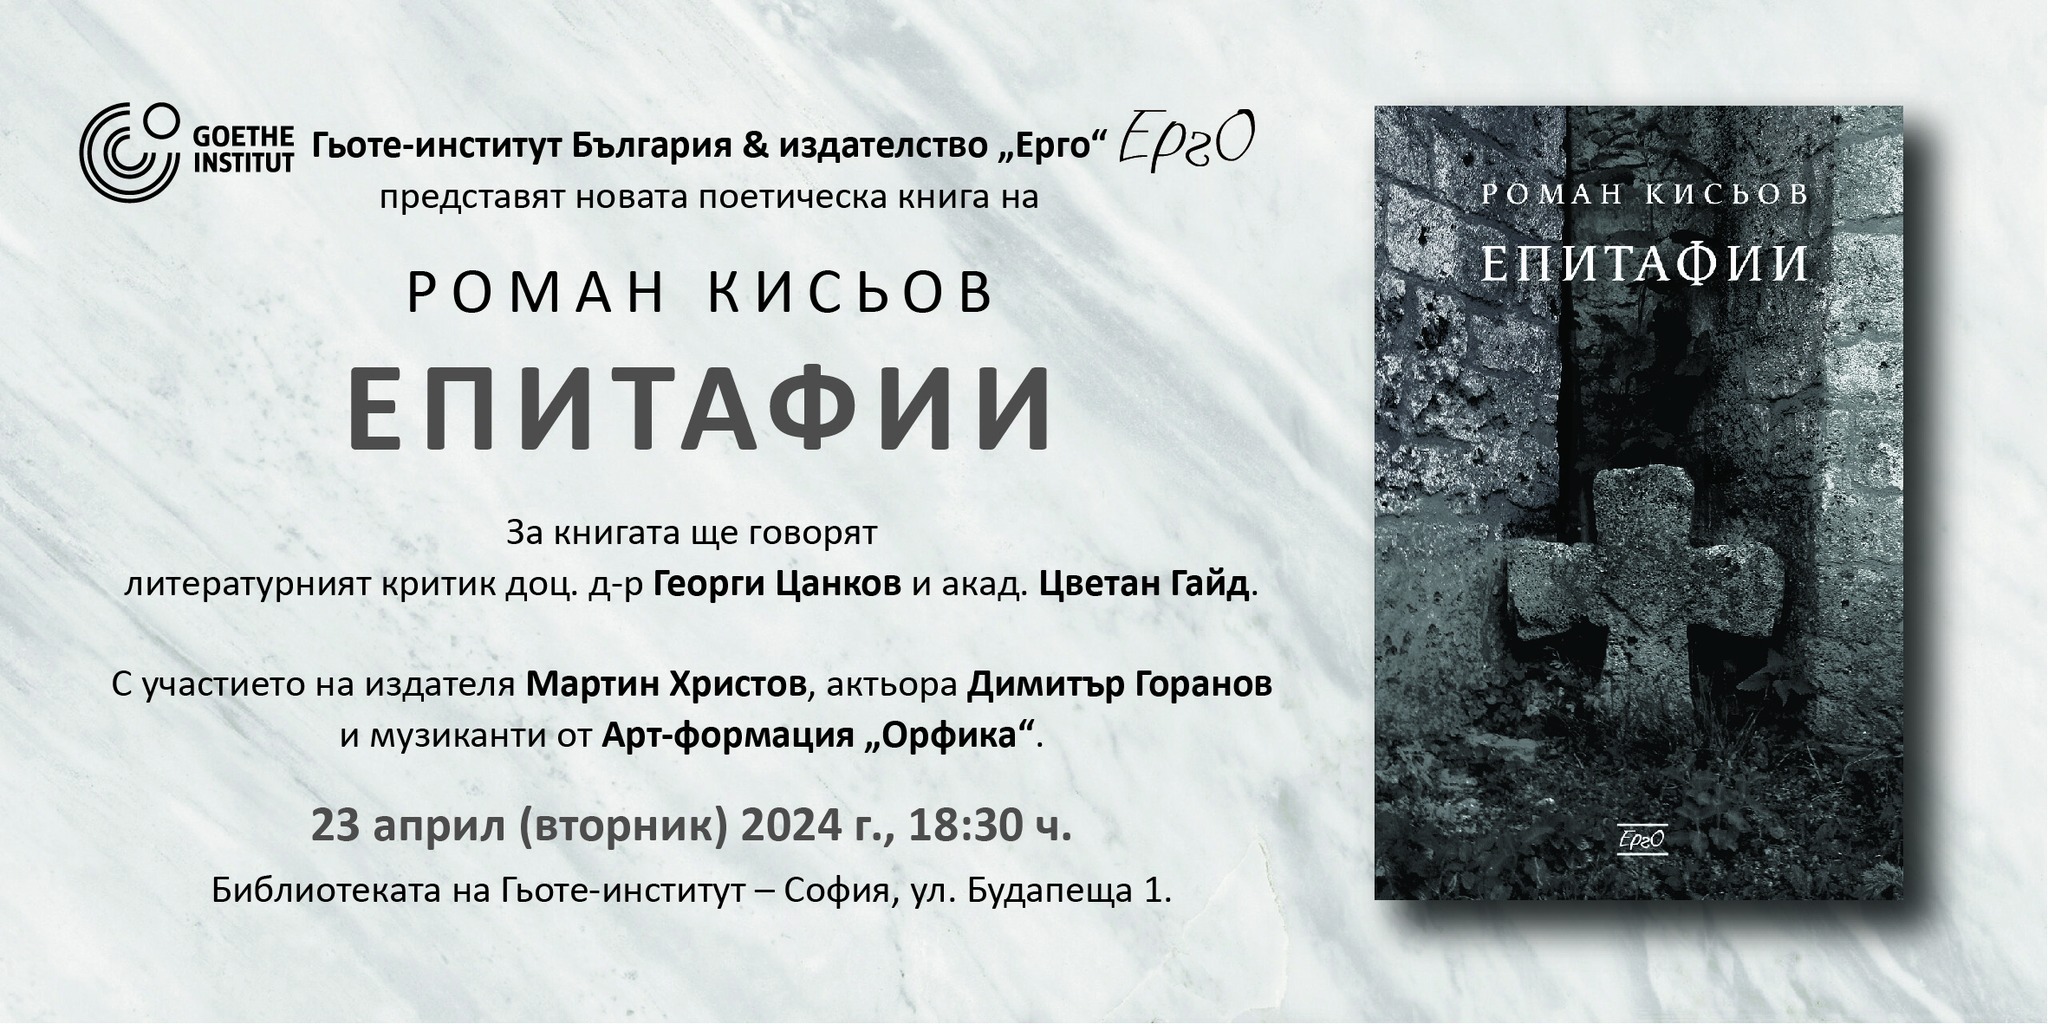 Представяне на новата поетическа книга на Роман Кисьов „ЕПИТАФИИ“